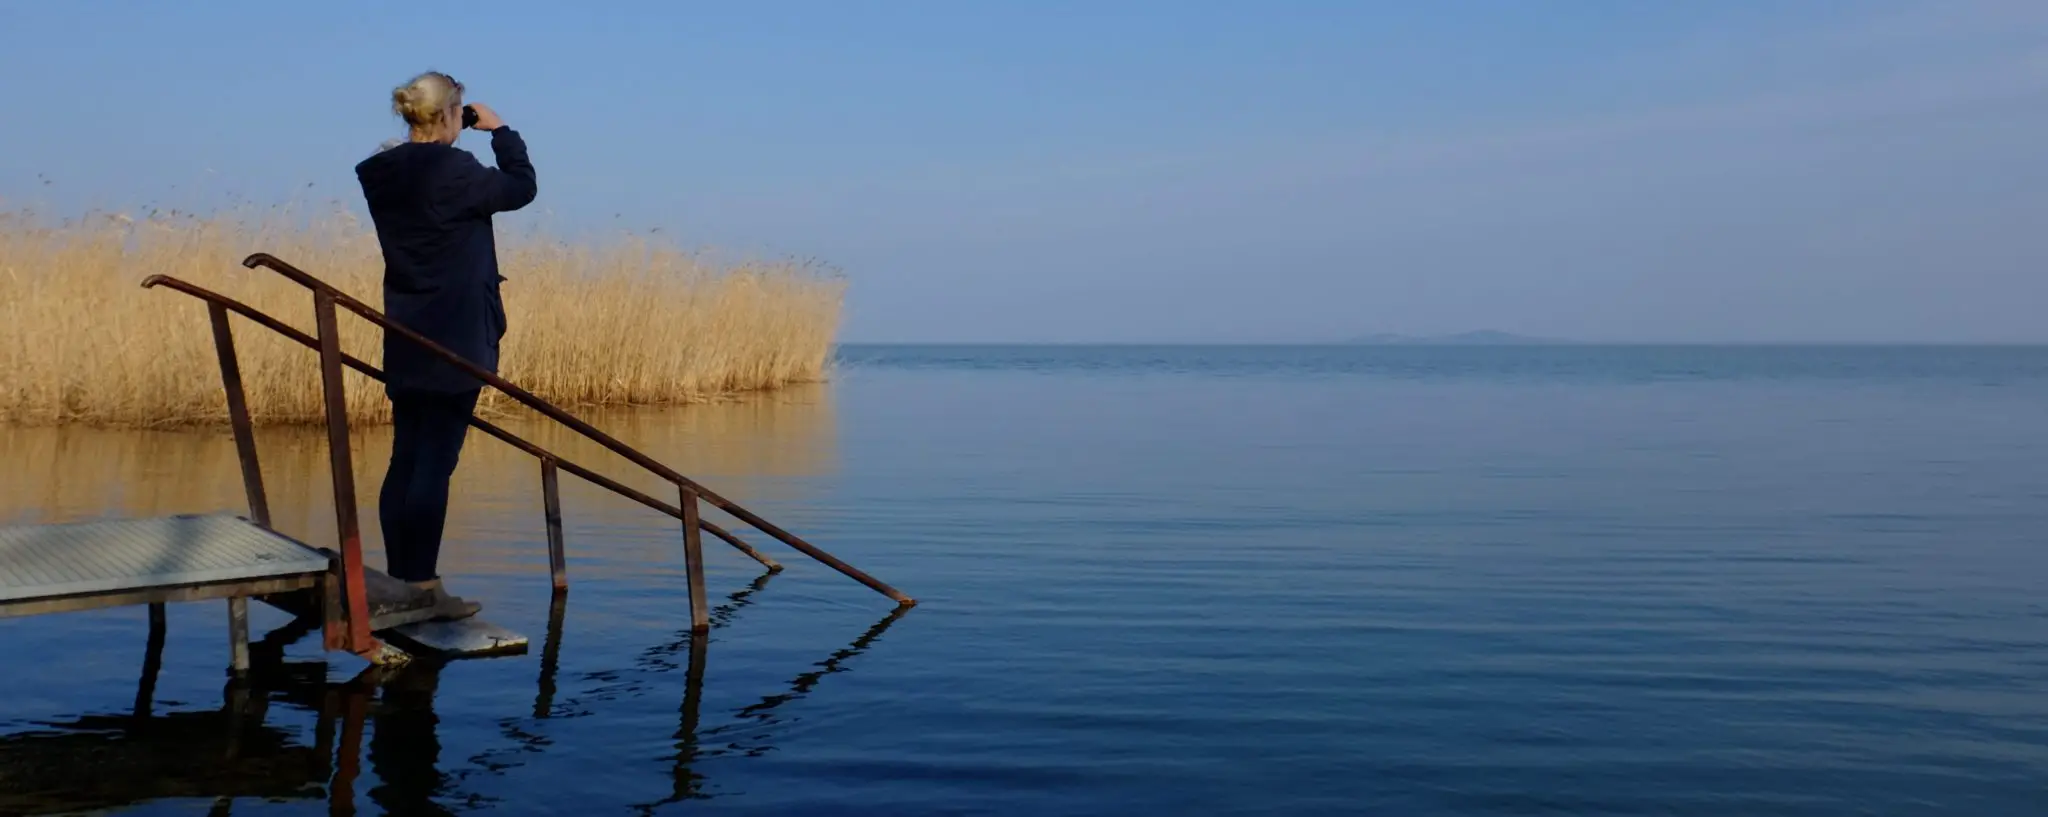 Birdwatching at Lake Balaton